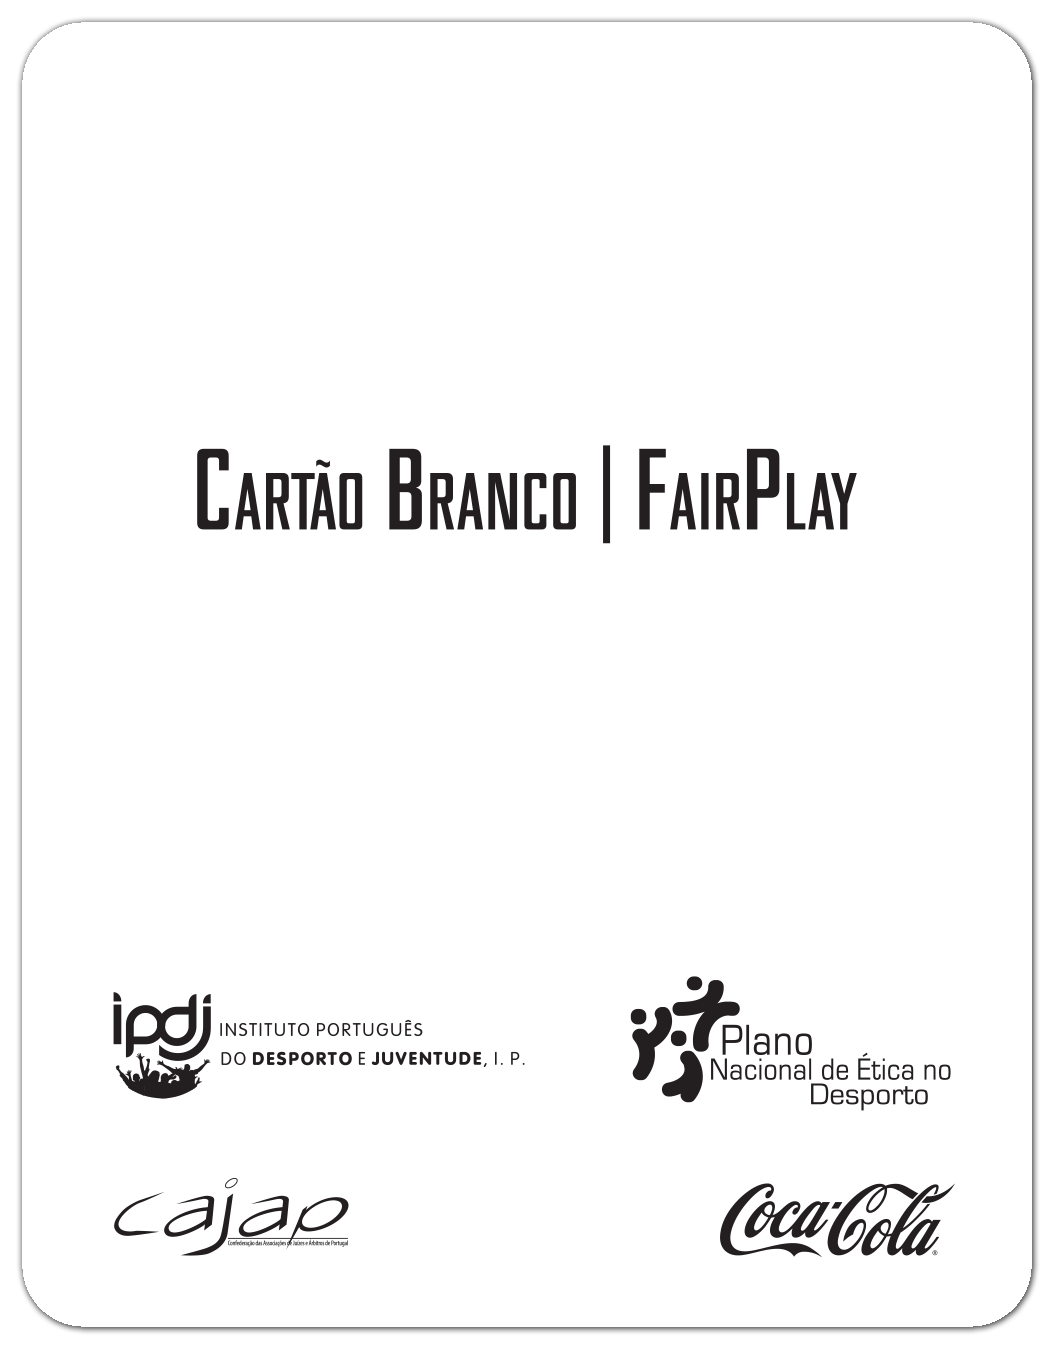 Cartão Branco - Fair Play